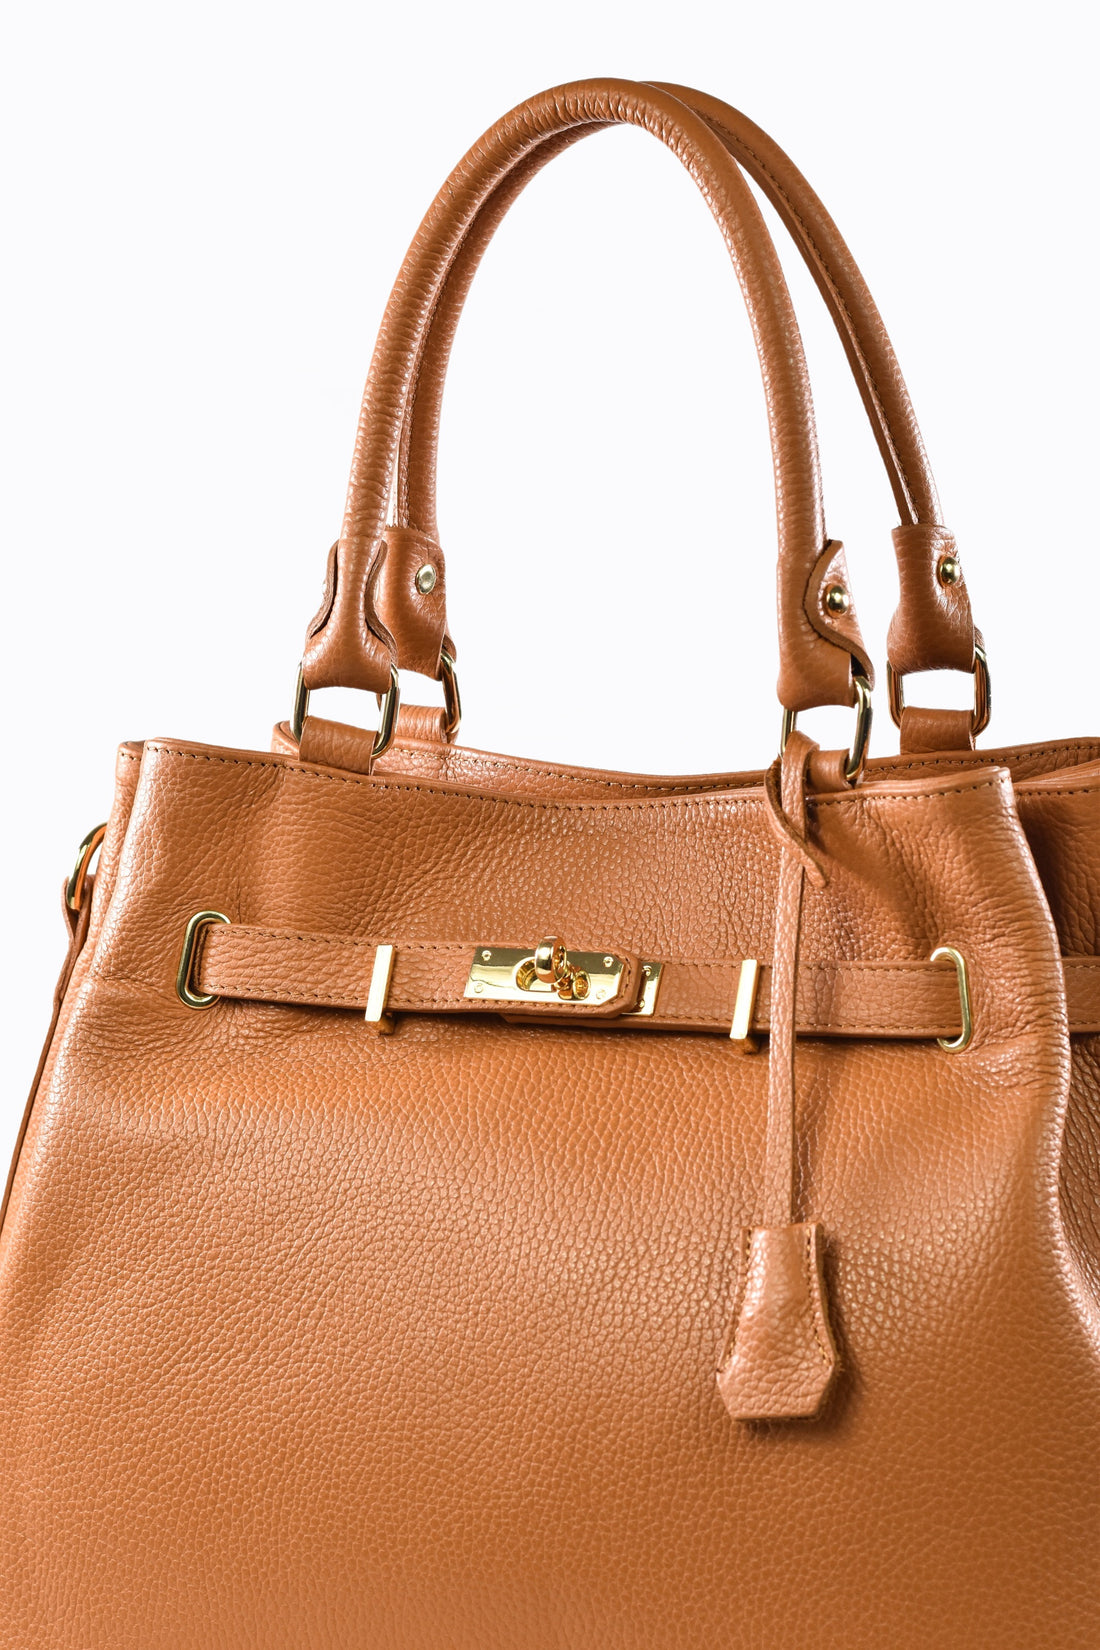 Braid bag in Fuchsia Dollar leather